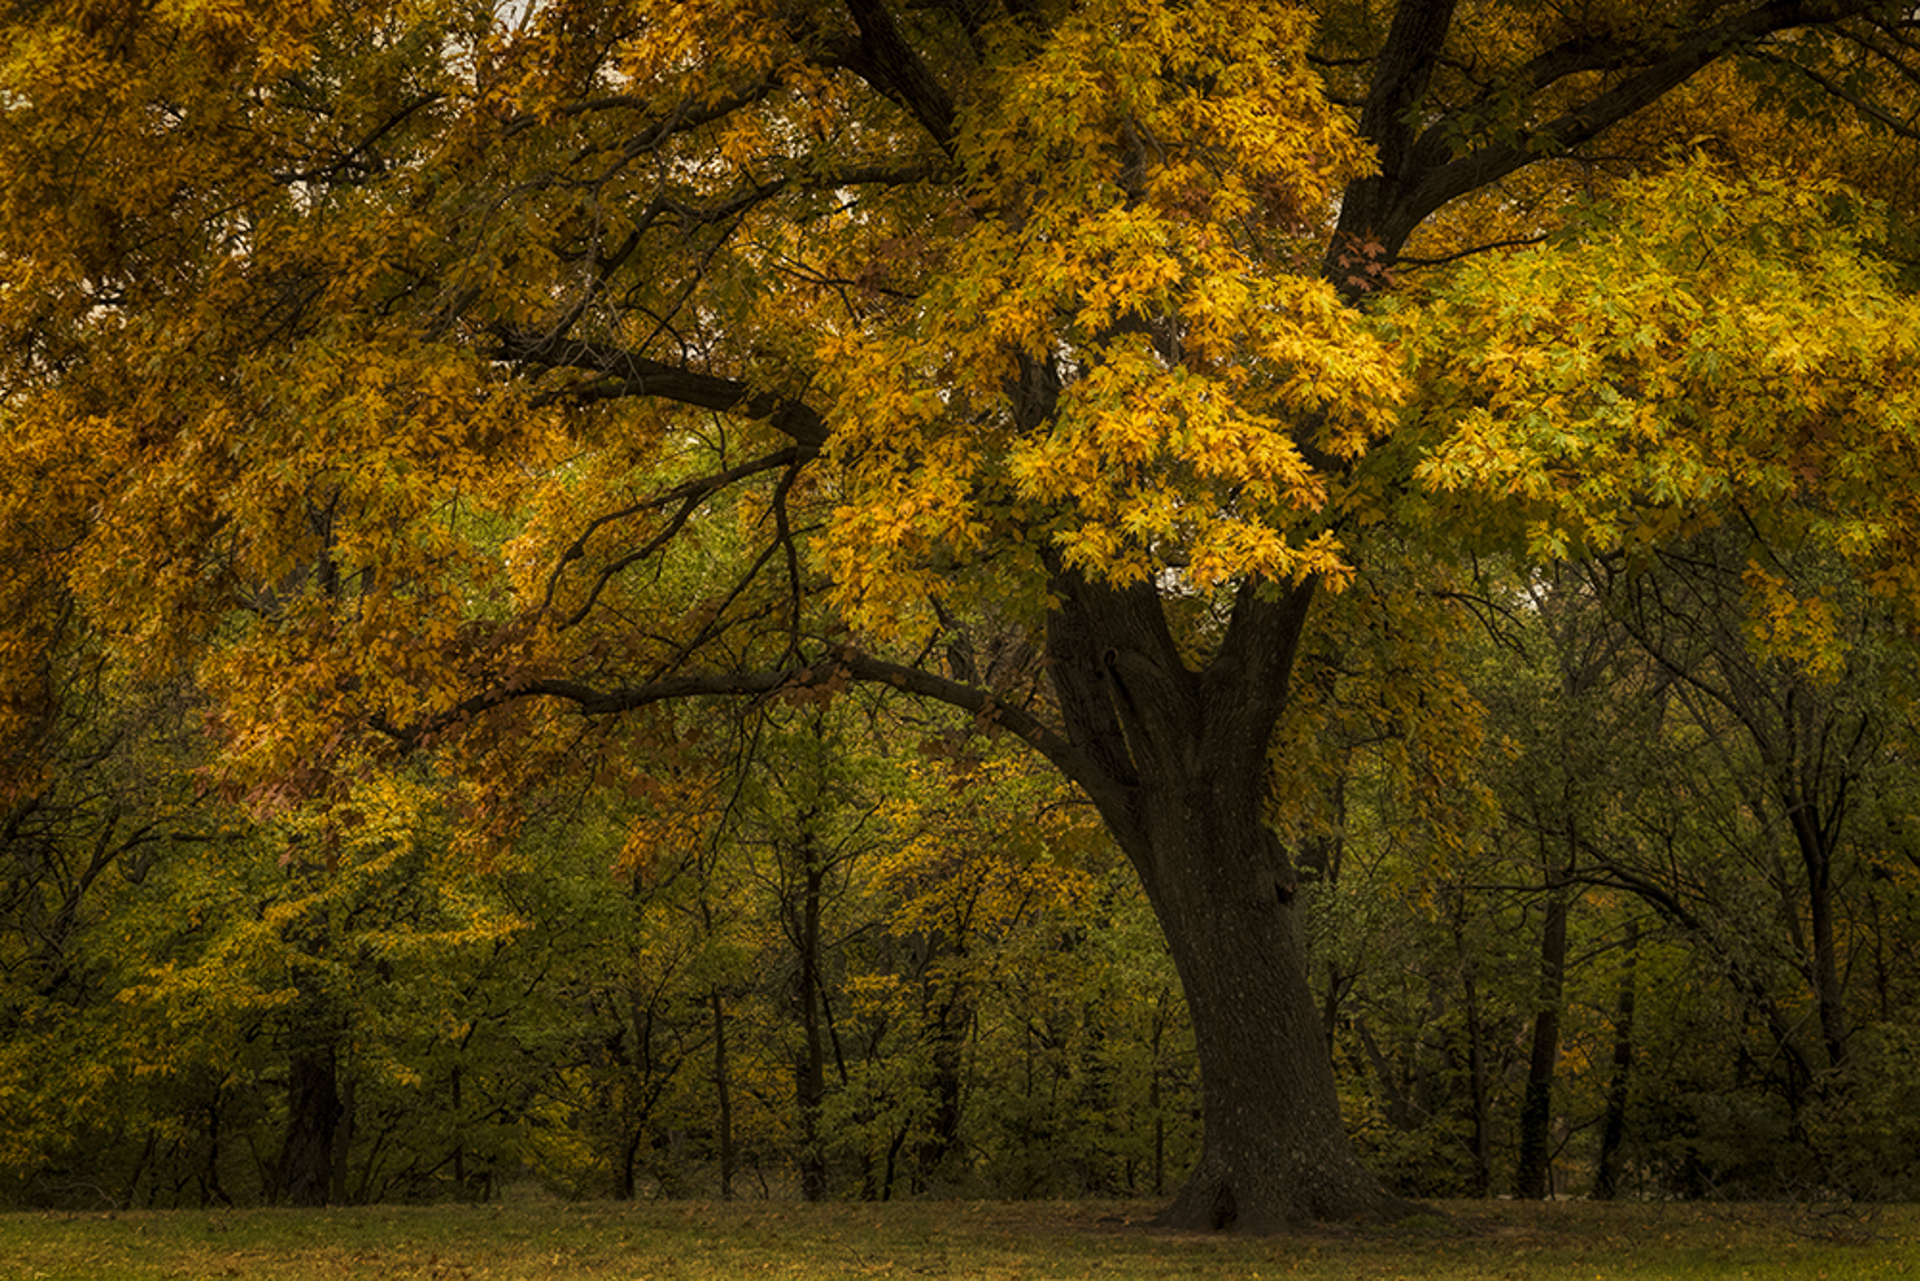 Autumn Beauty by Scott Bean